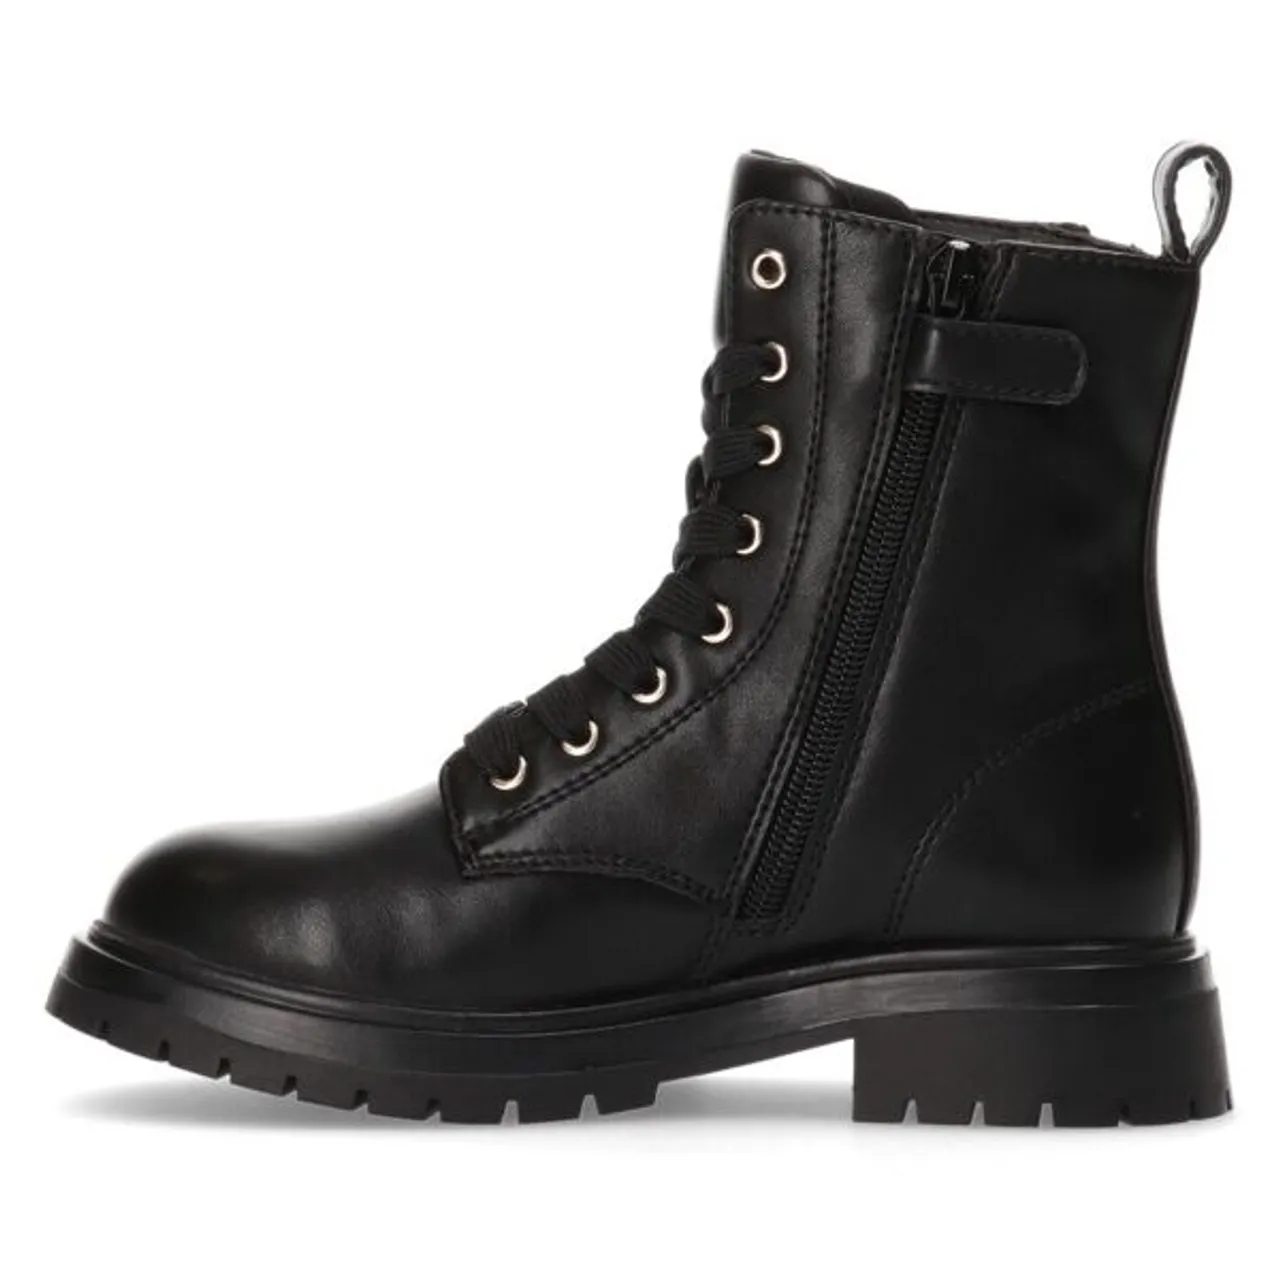 Schnürstiefel TOMMY HILFIGER "LACE-UP BOOTIE" Gr. 31, schwarz (black) Kinder Schuhe Stiefel Boots